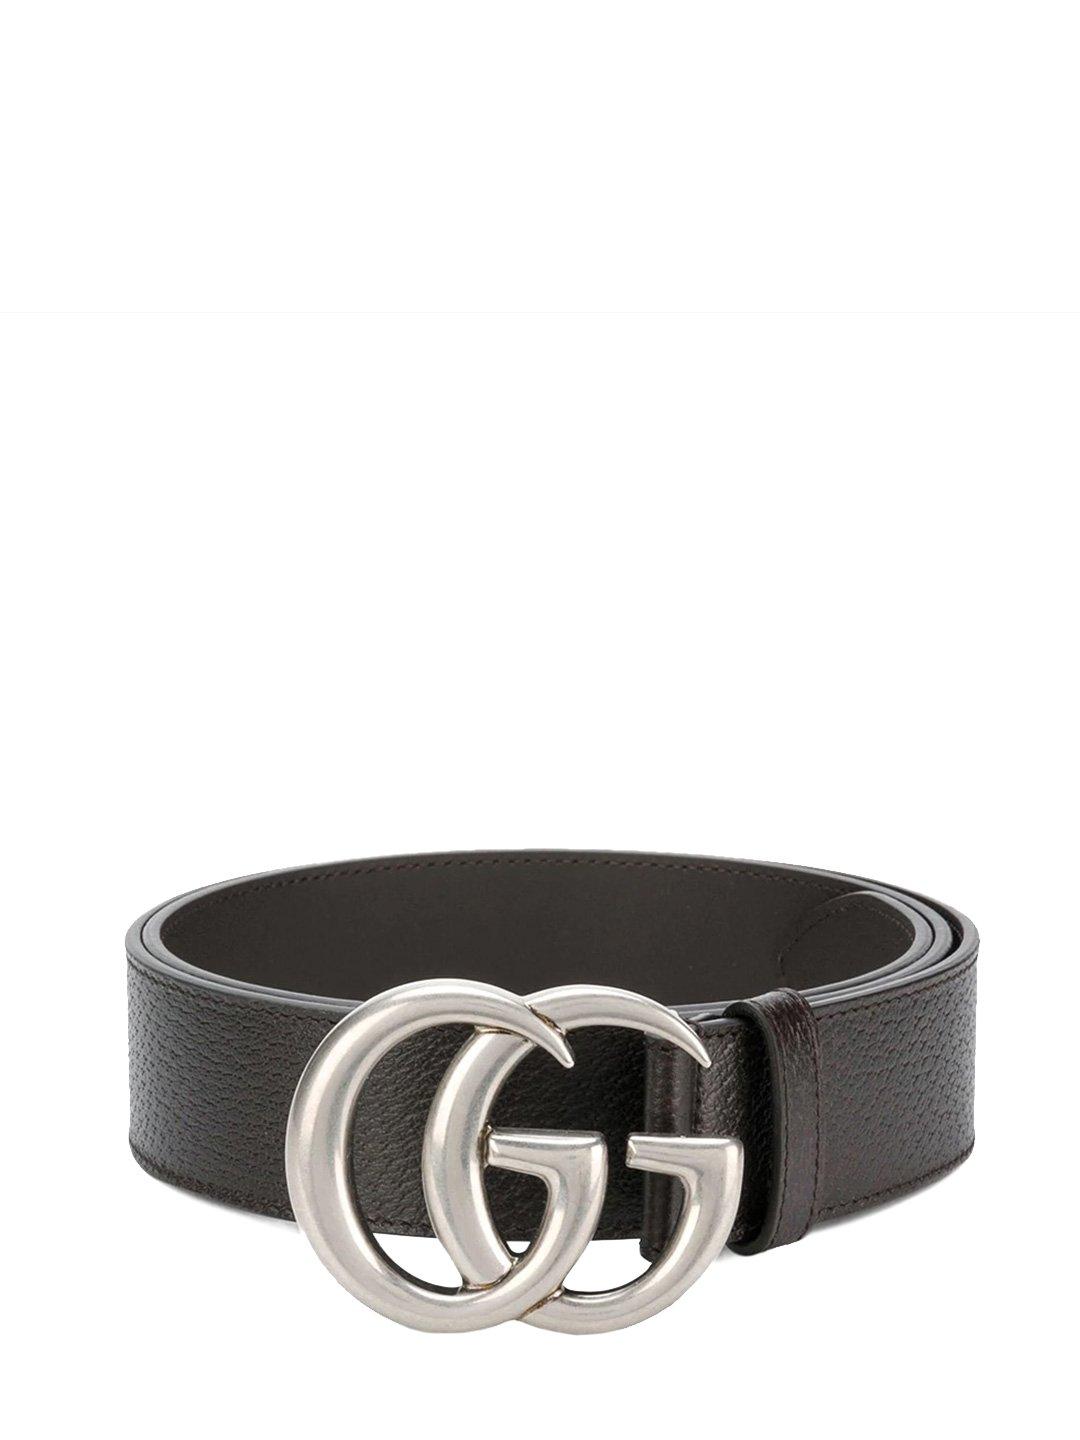 gucci double g belt sale